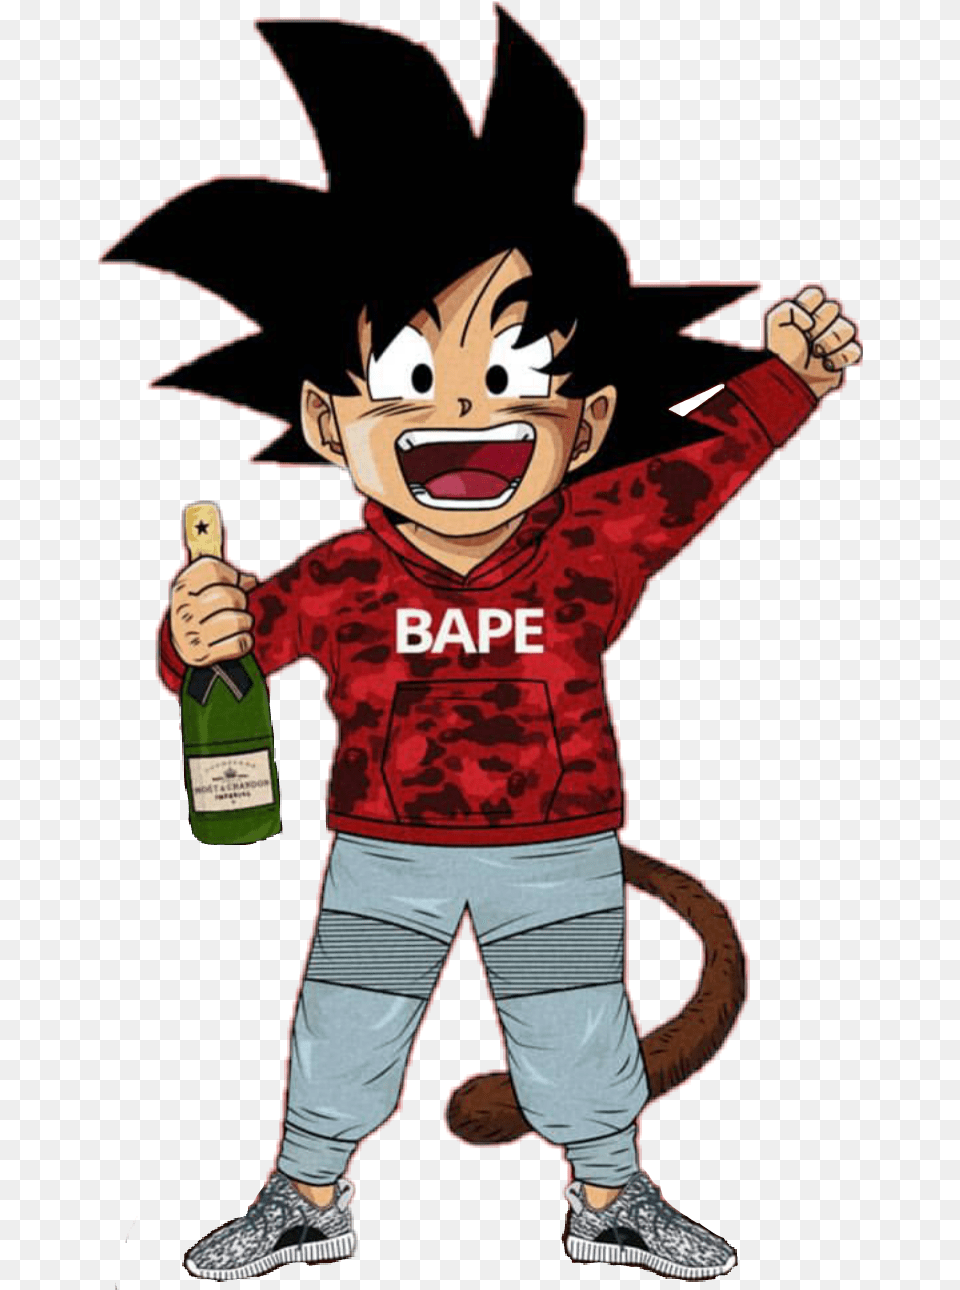 Goku Dragon Ball Z Supreme, Person, Male, Boy, Child Png Image